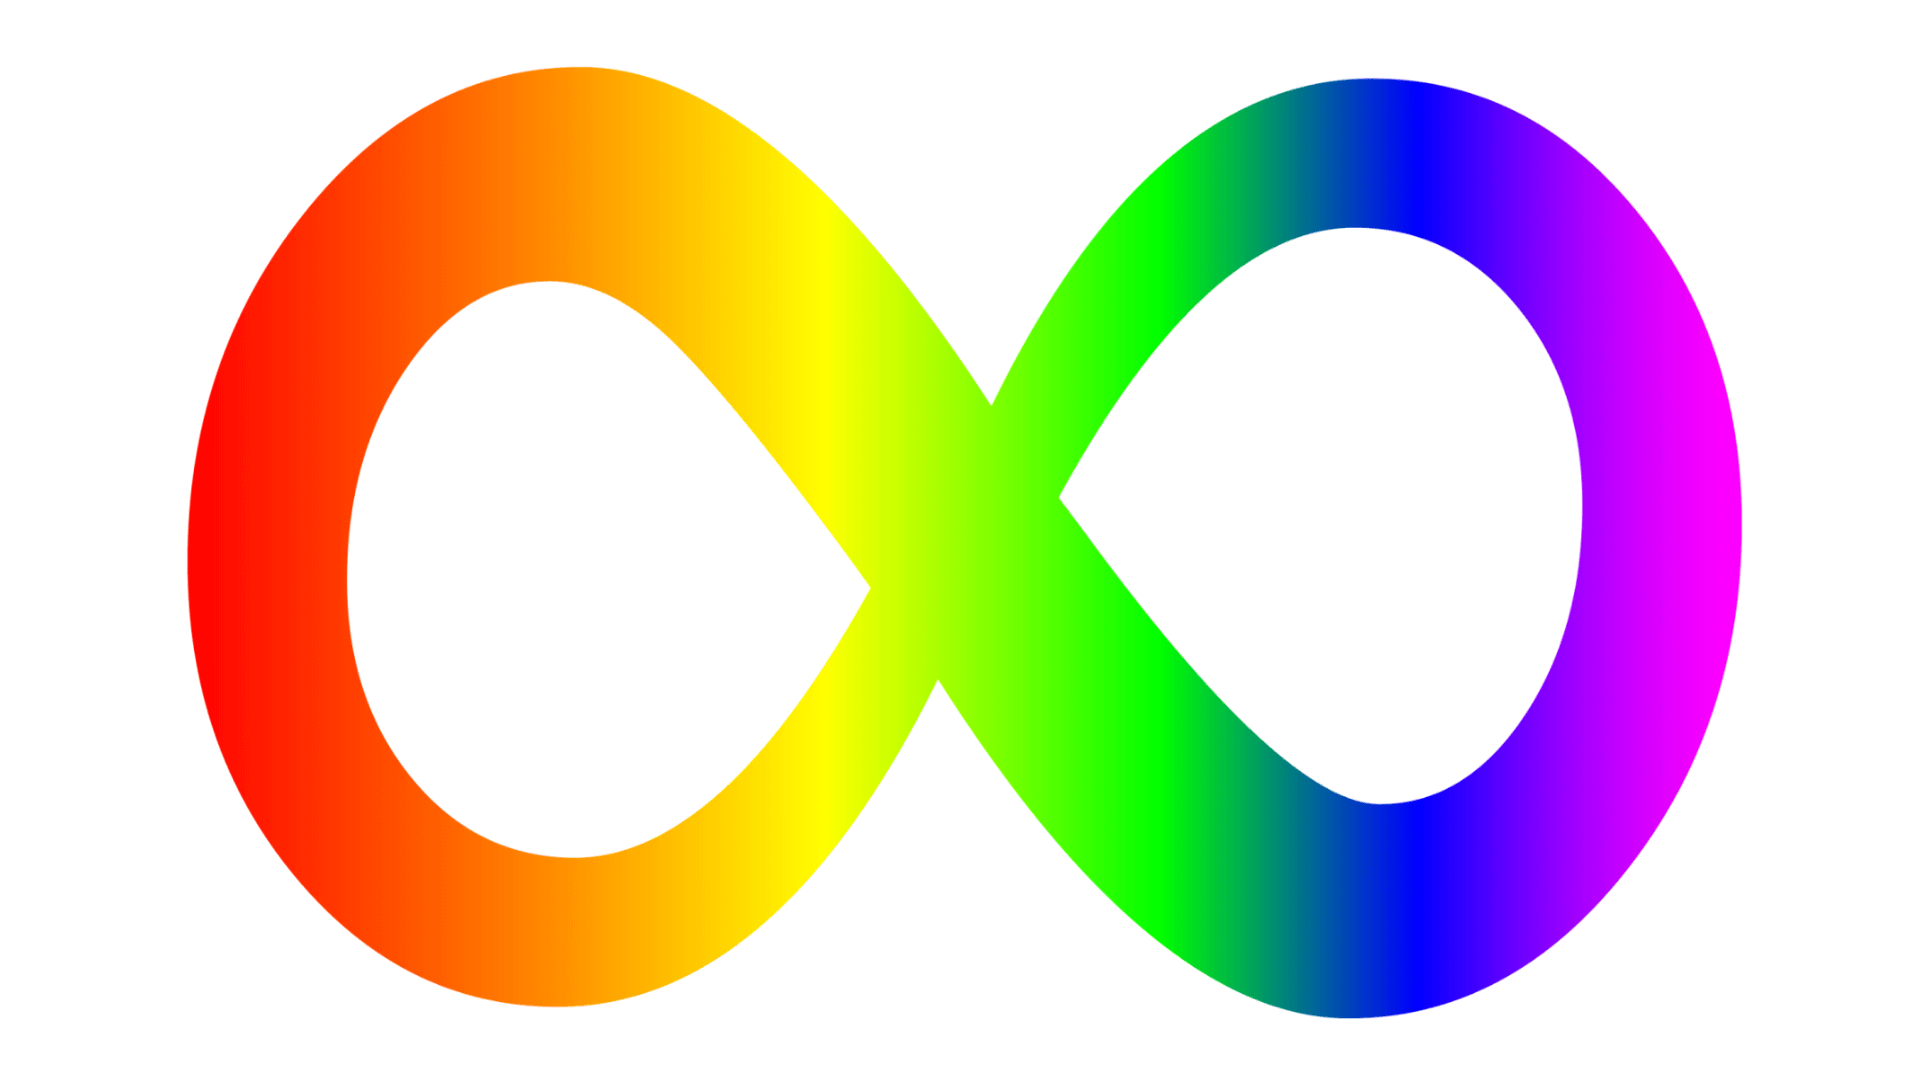 Tęczowy symbol nieskończoności symbolizujący neuroróżnorodność